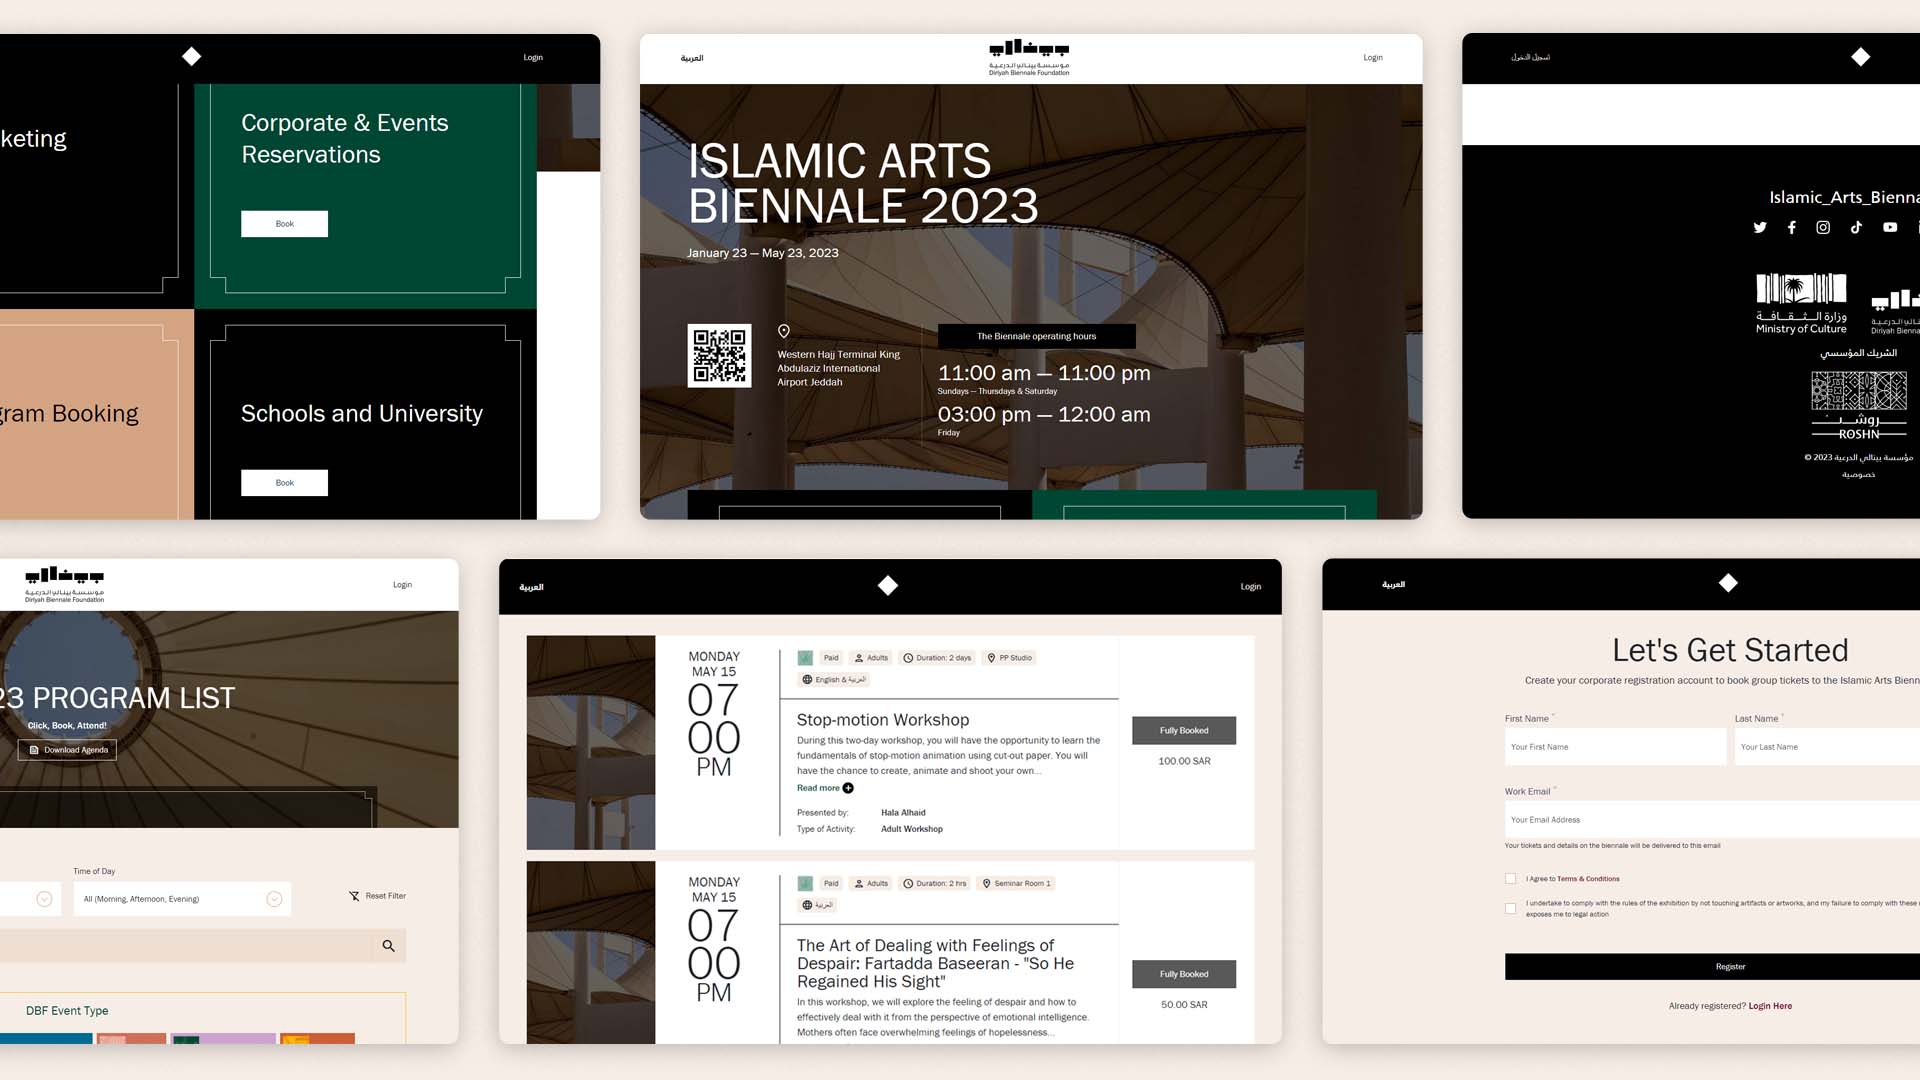 Islamic Arts Biennale 2023 website